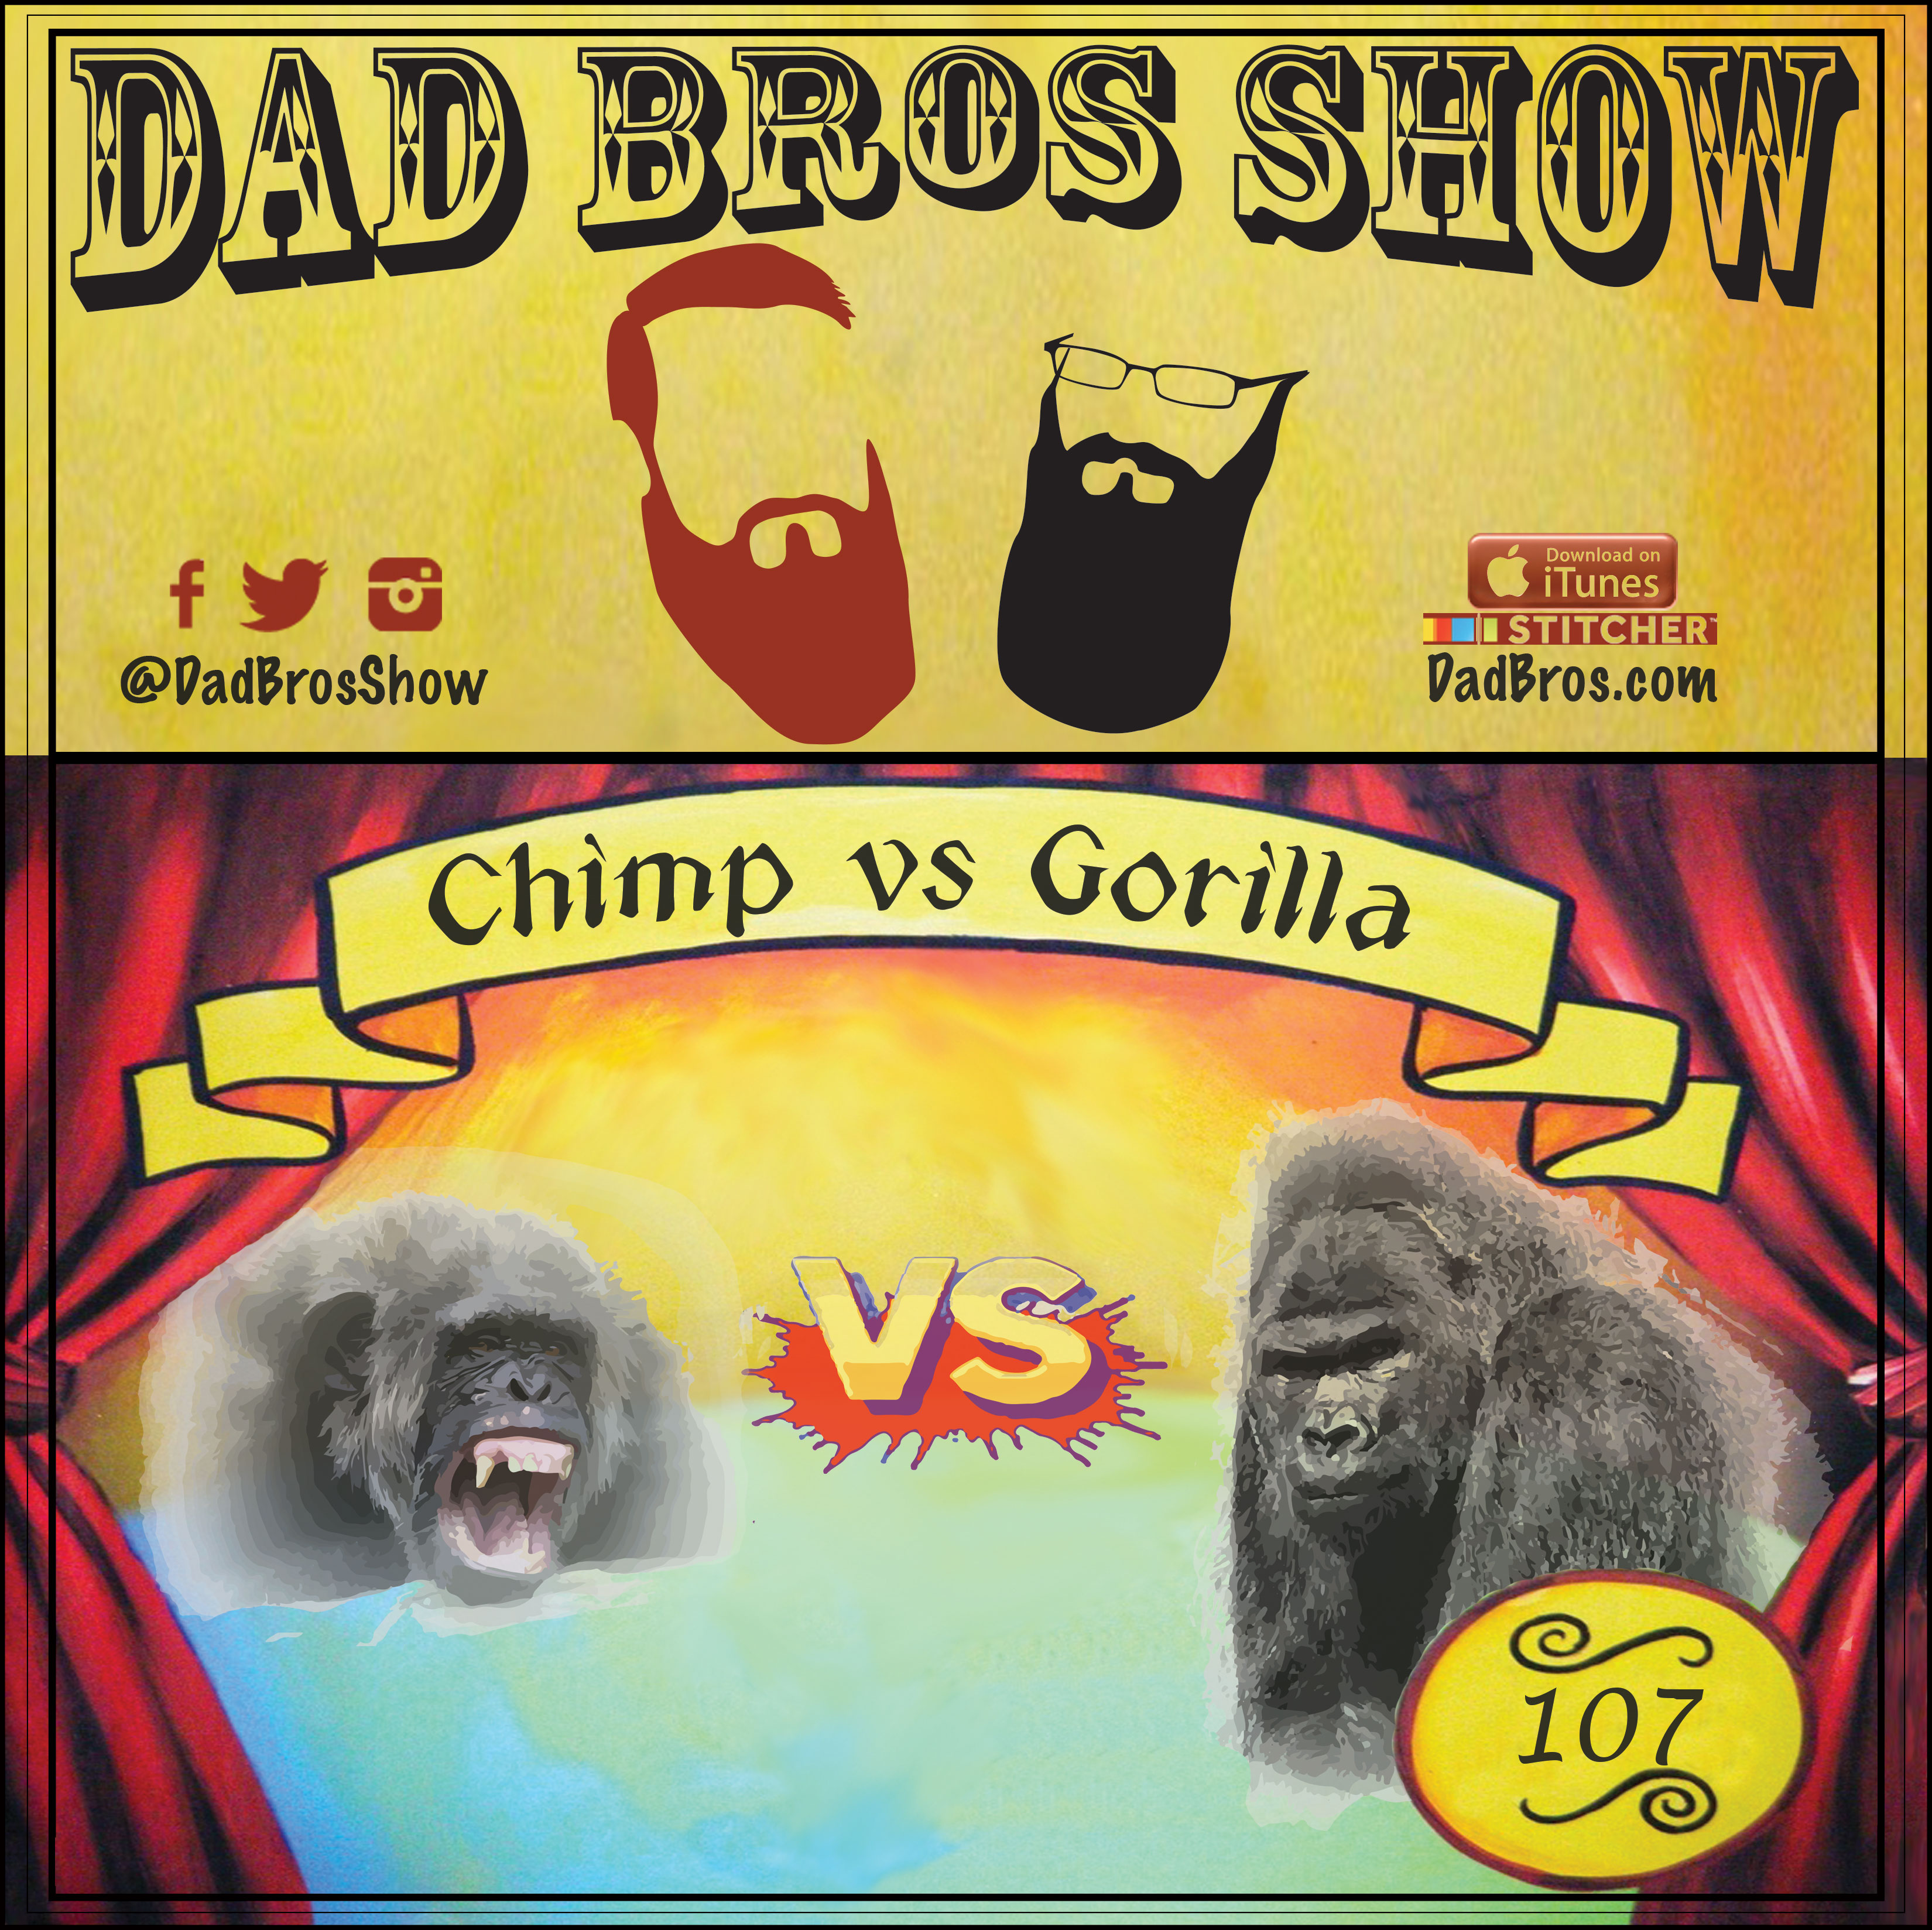 chimpanzee vs gorilla images